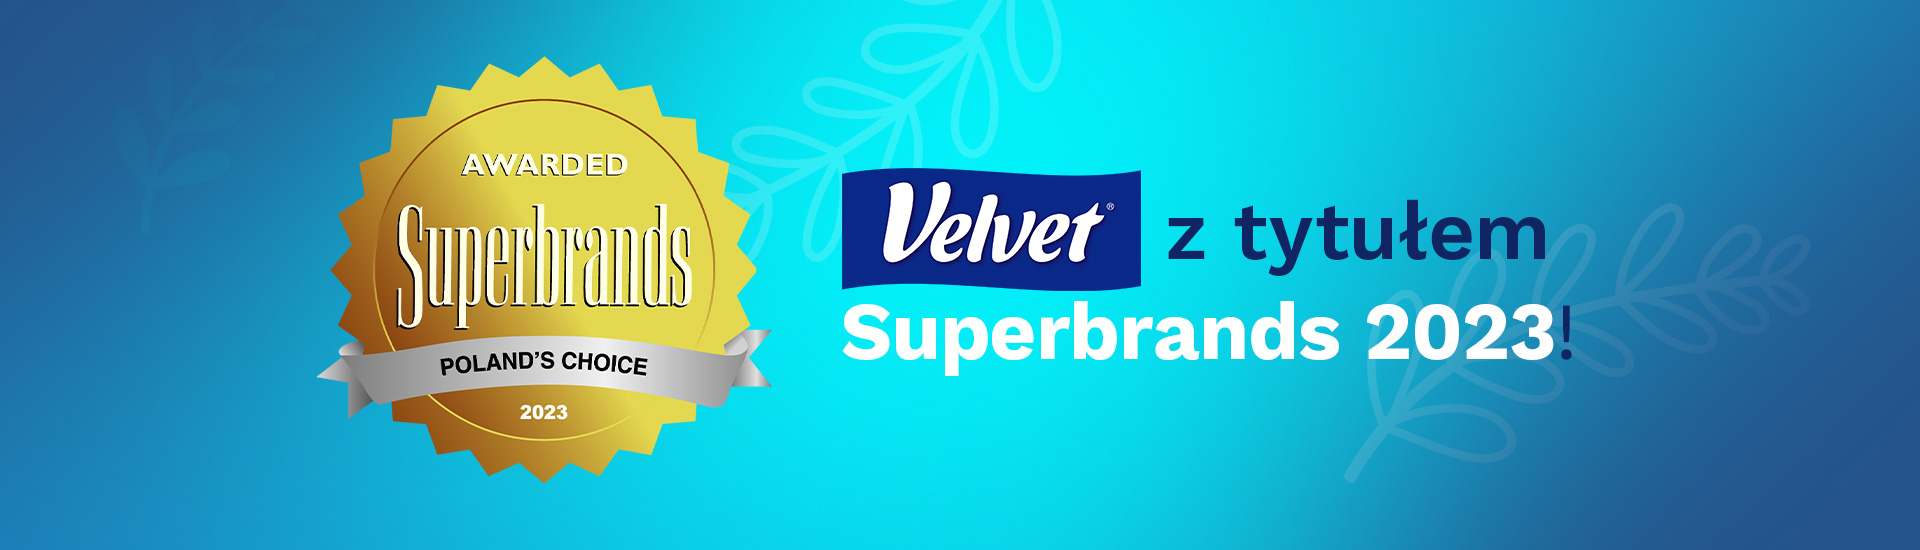 Velvet z tytułem Superbrands 2023!